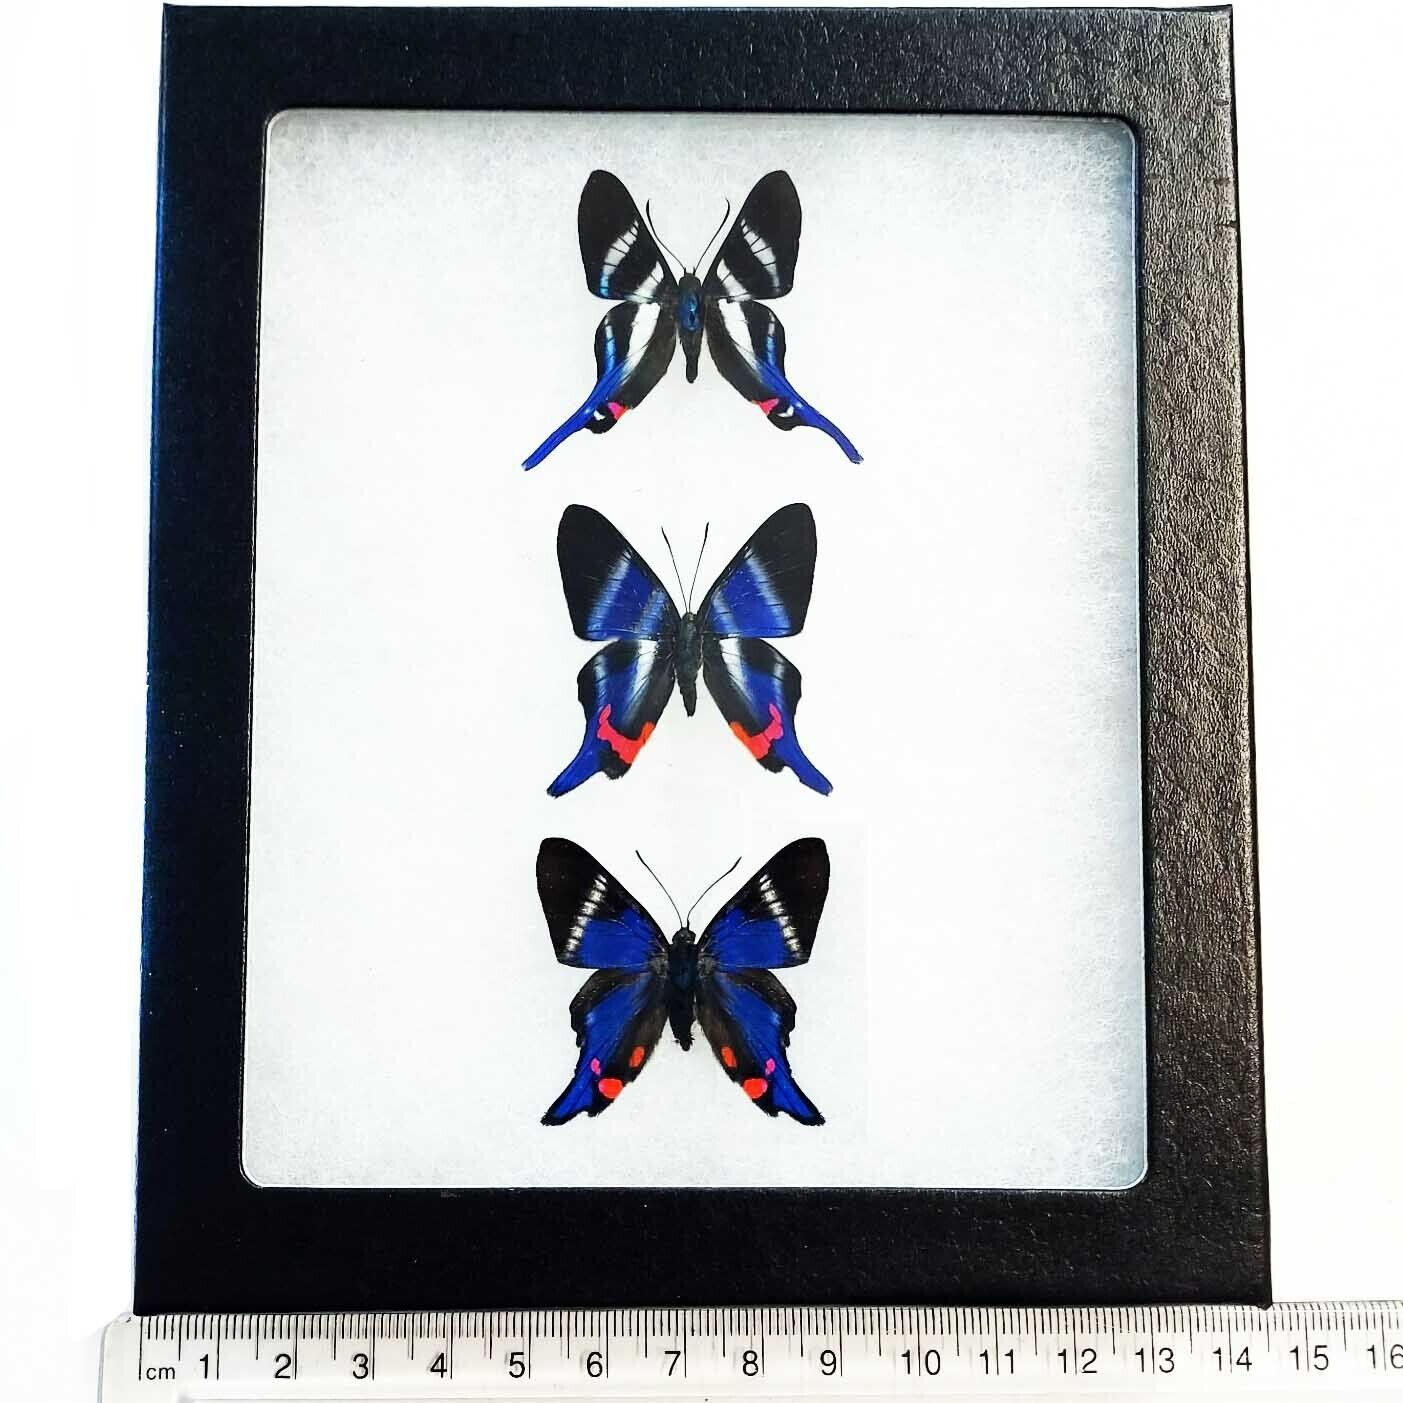 Rhetus ARCIUS + DYSONII + PERIANDER blue butterflies Peru framed TRIO